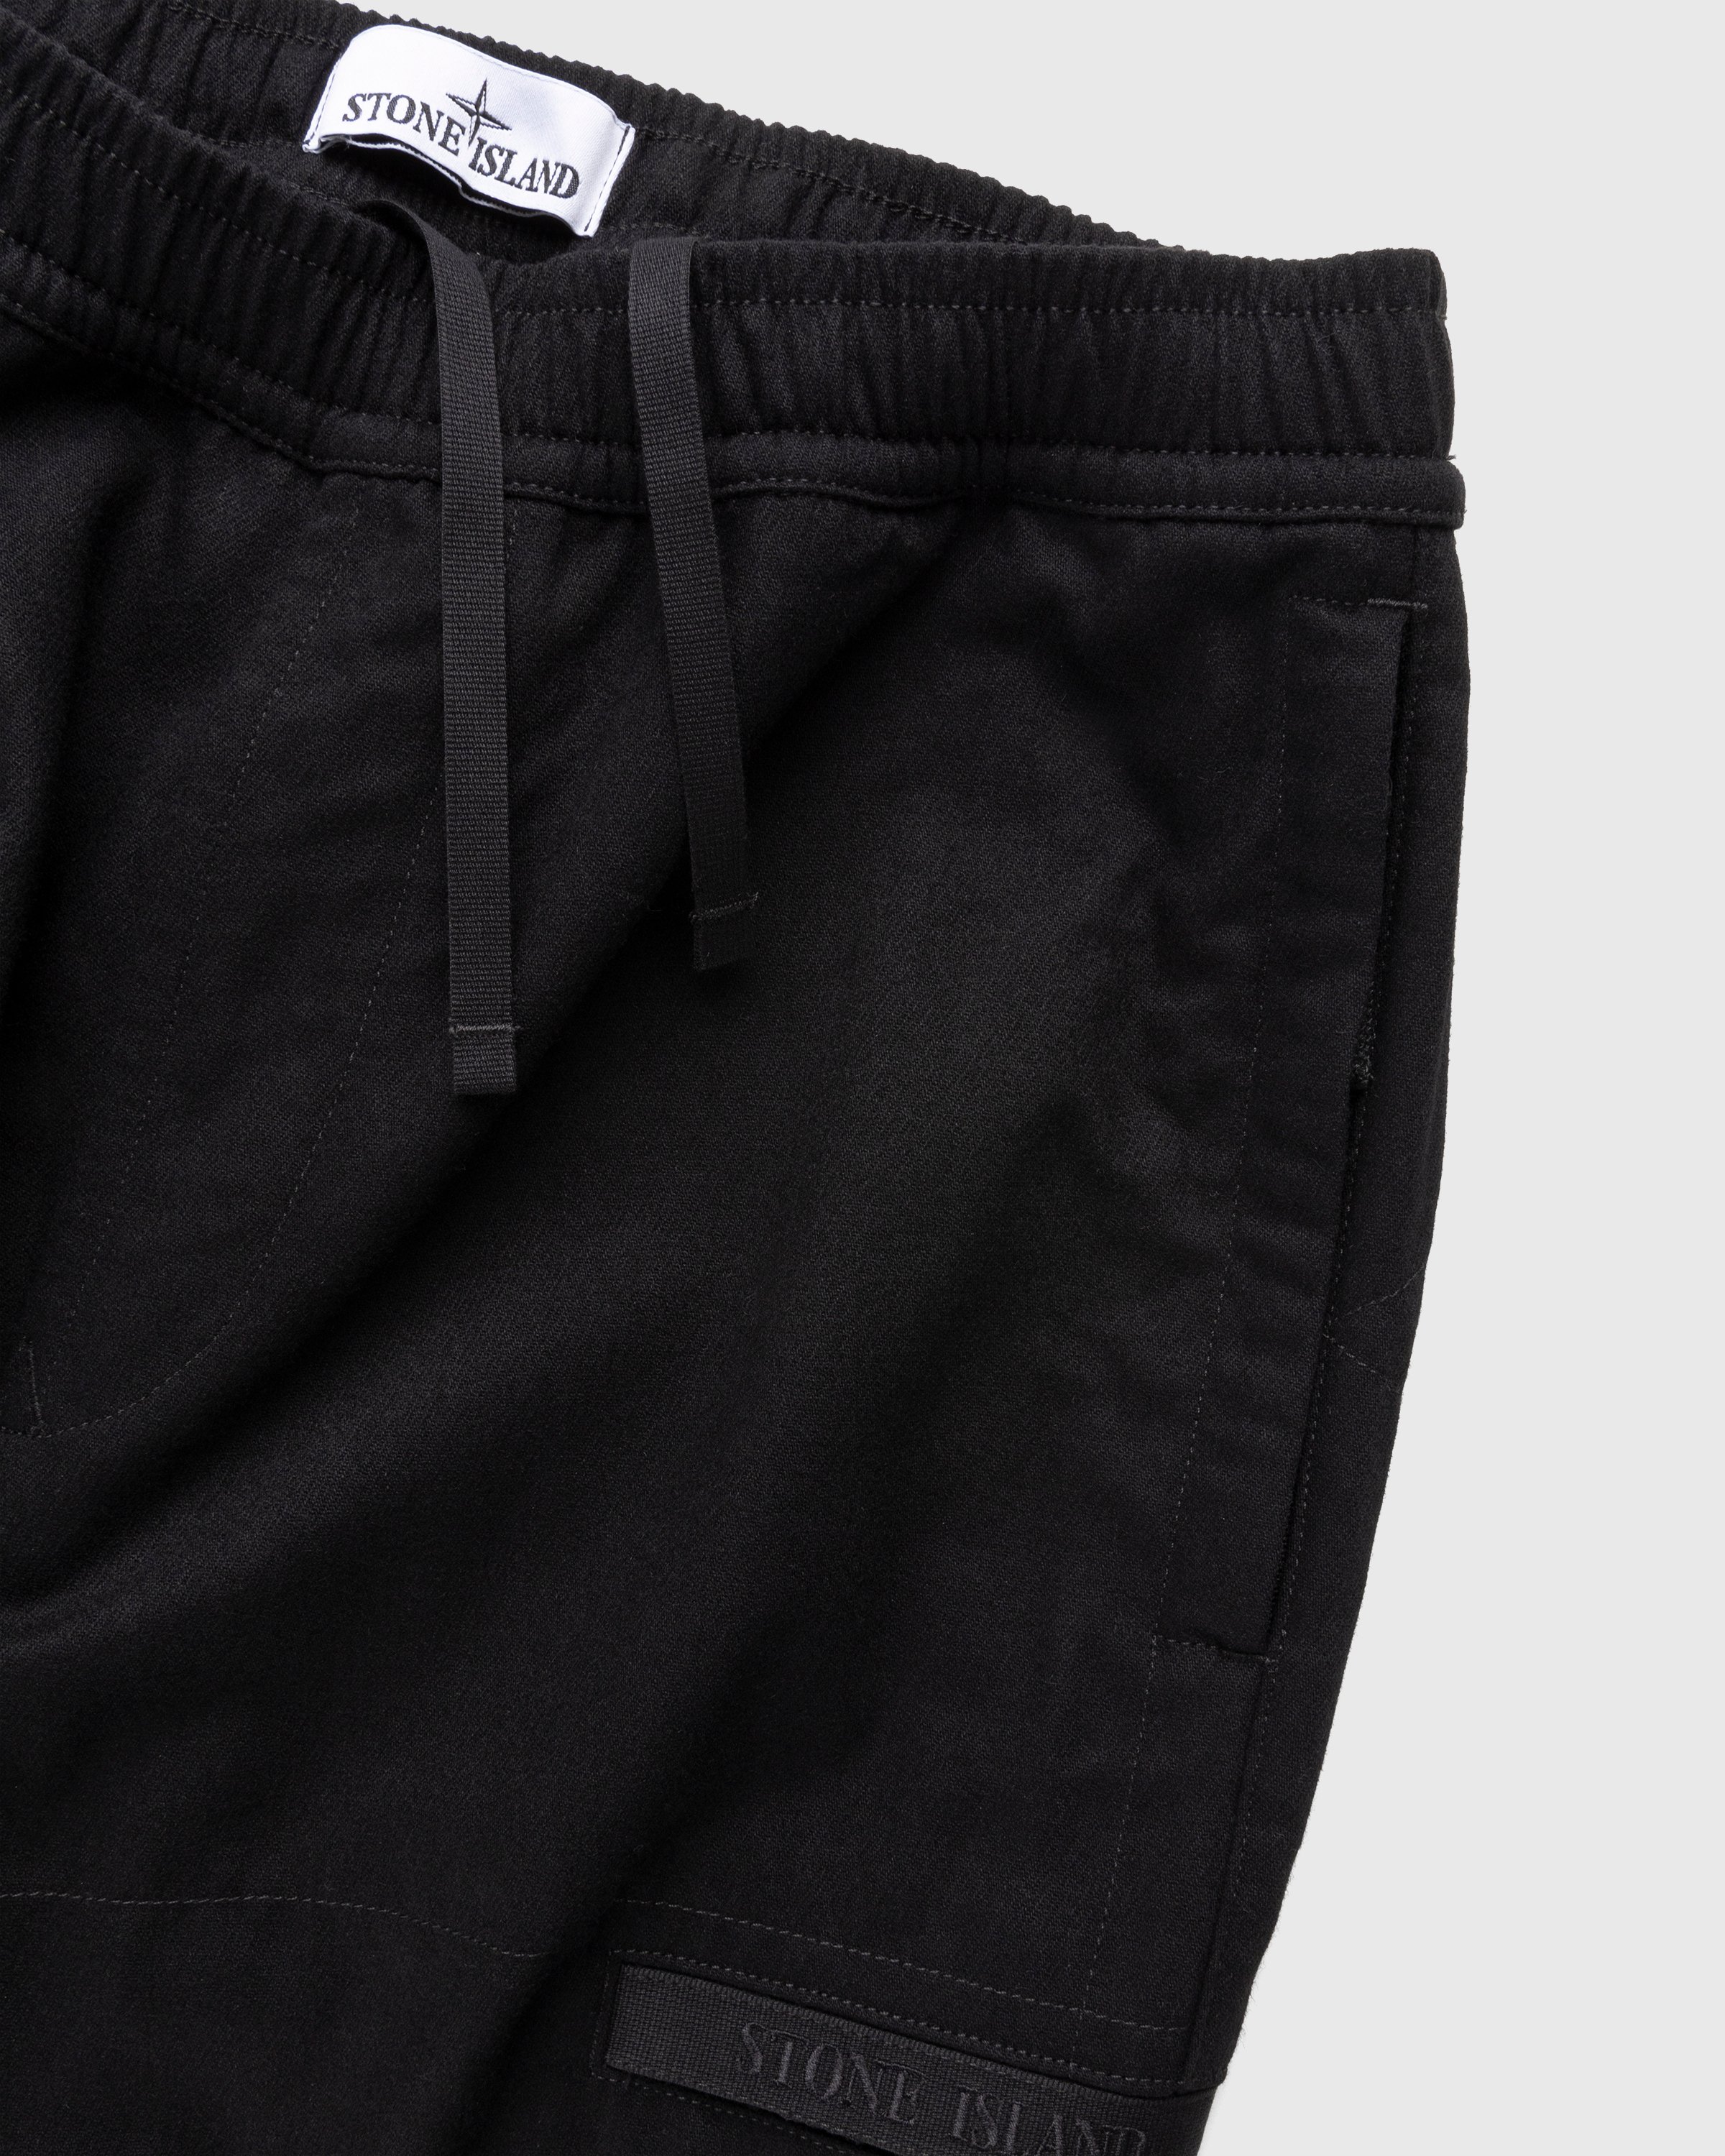 Stone Island - Wool-Nylon Cargo Pants Black - Clothing - Black - Image 3